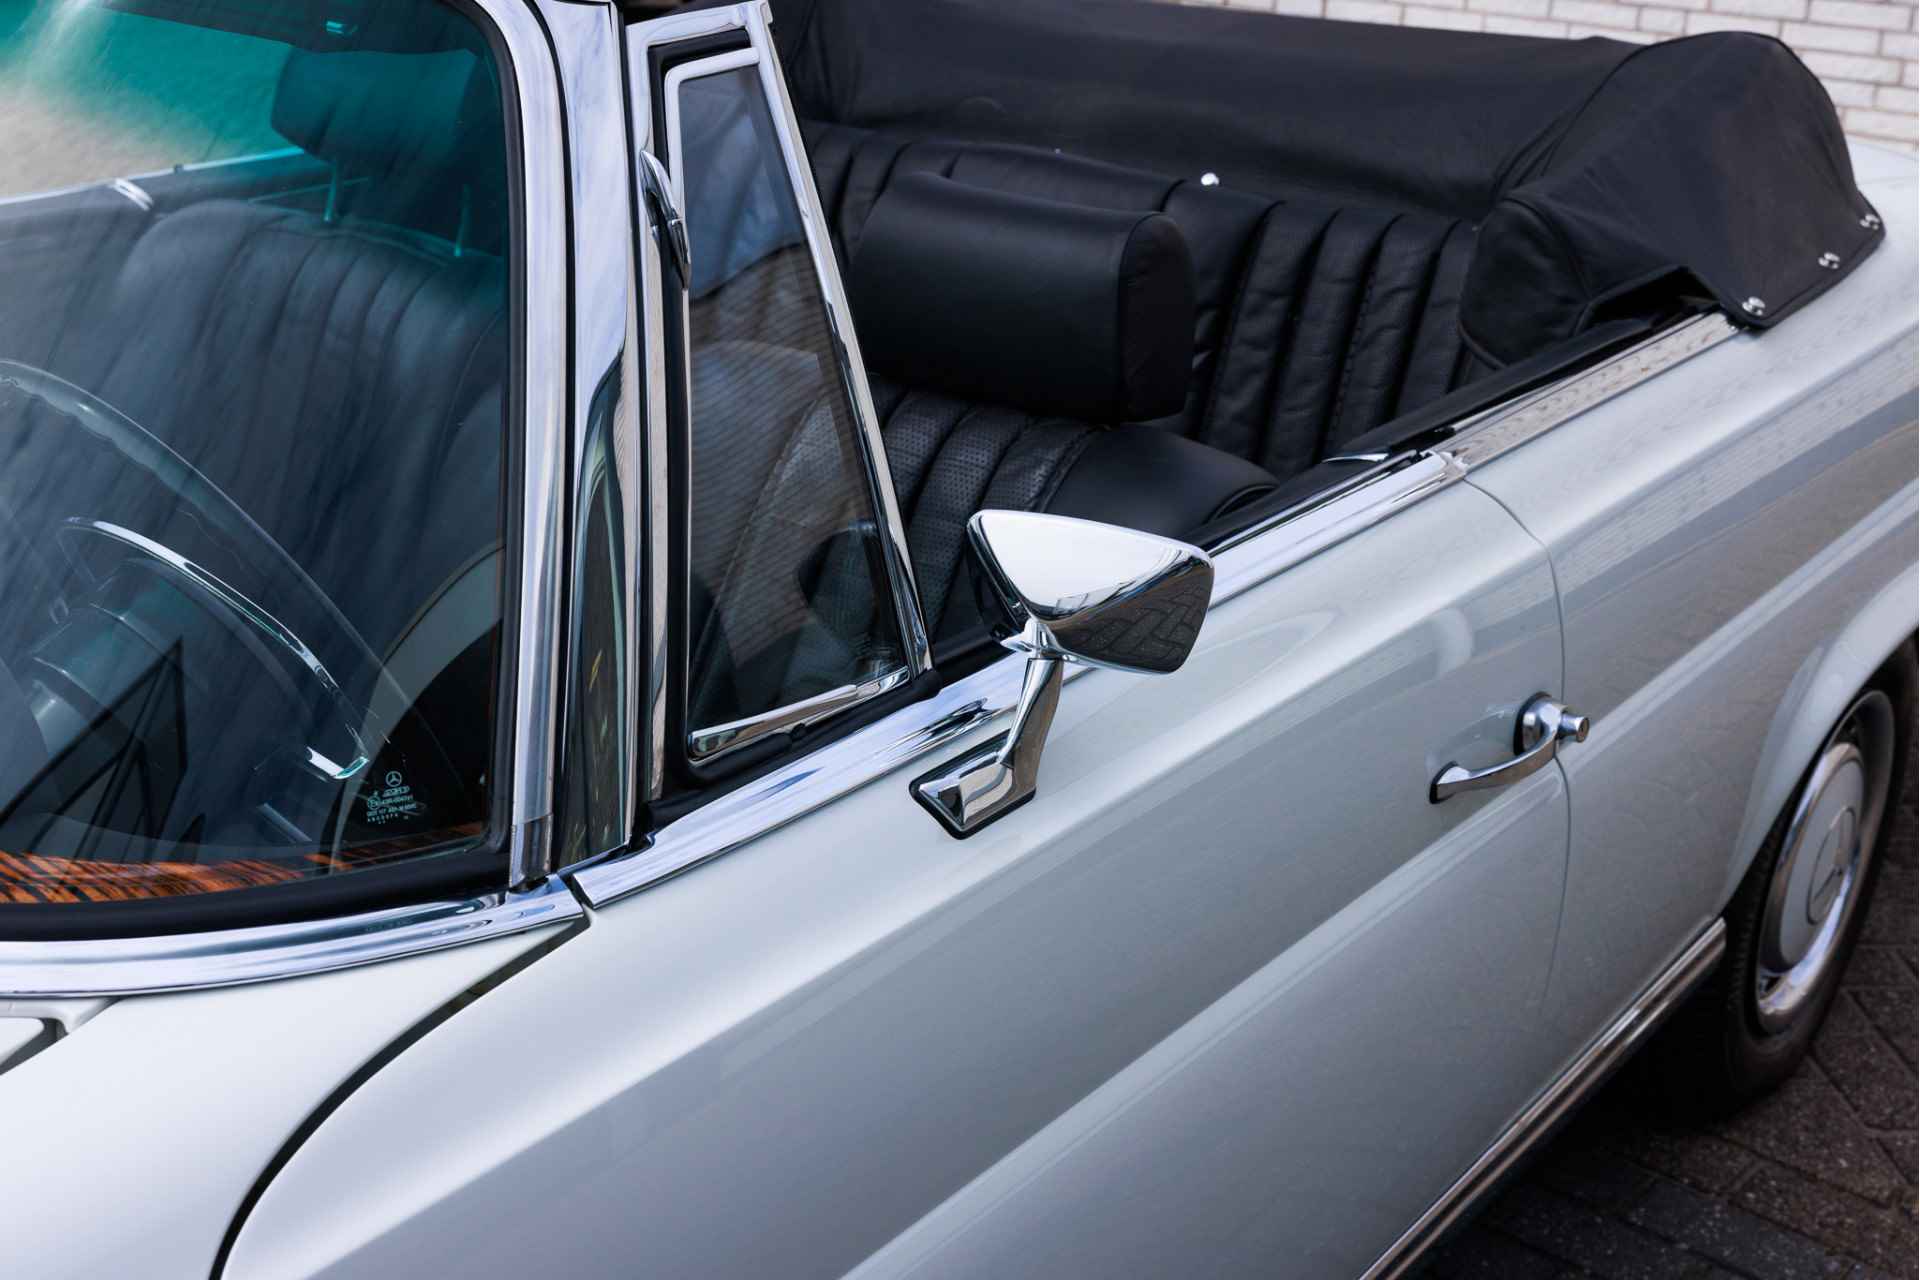 Mercedes-Benz W111 280 SE Cabriolet Volledig gerestaureerd  Verkoop in opdracht | Flachkühler | Compleet gerestaureerd - 15/31